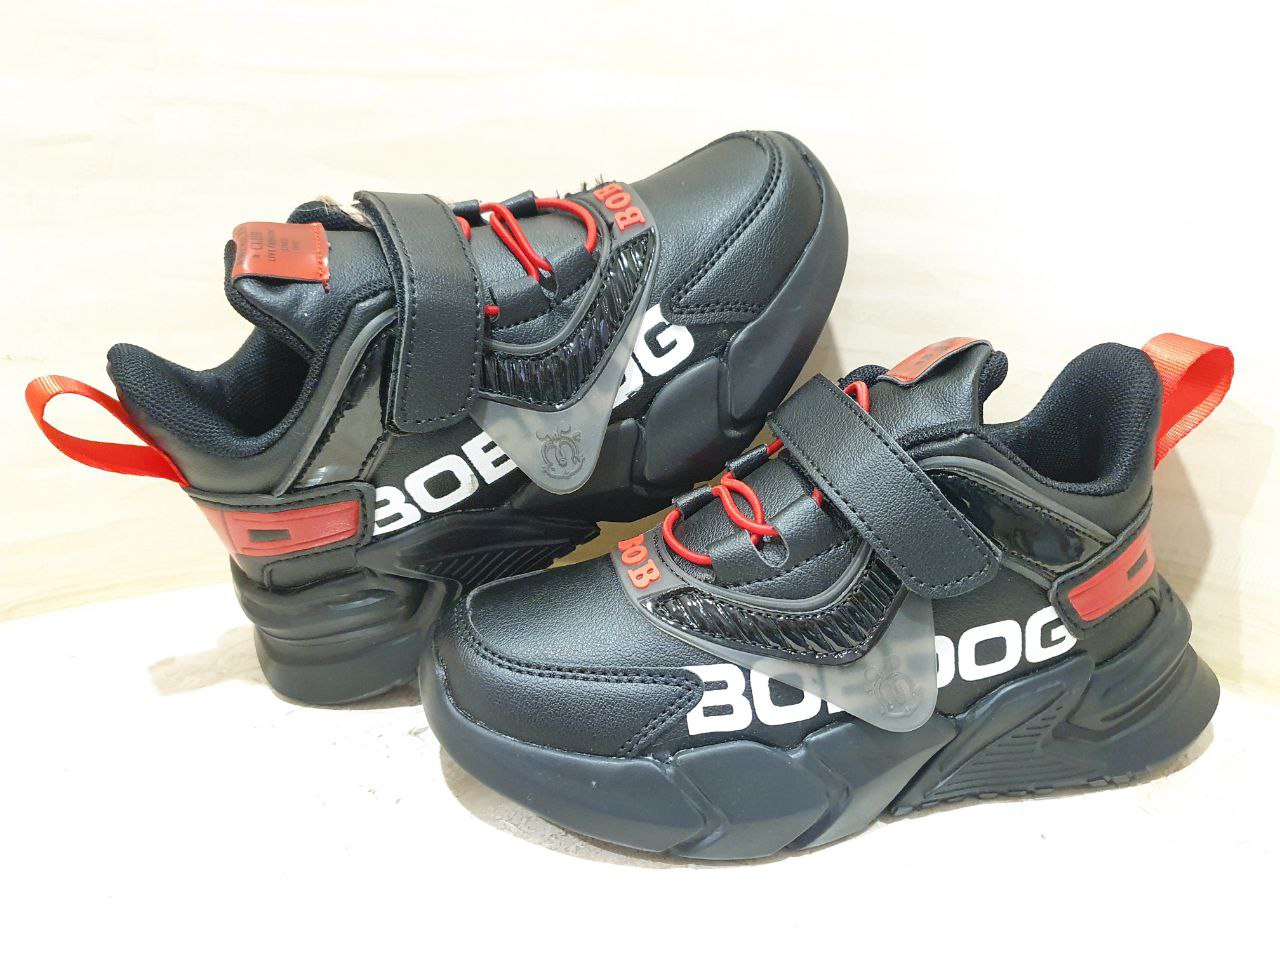 

Стильні кросівки для хлопчика American club BD 13/21 чорно-червоного кольору. 32